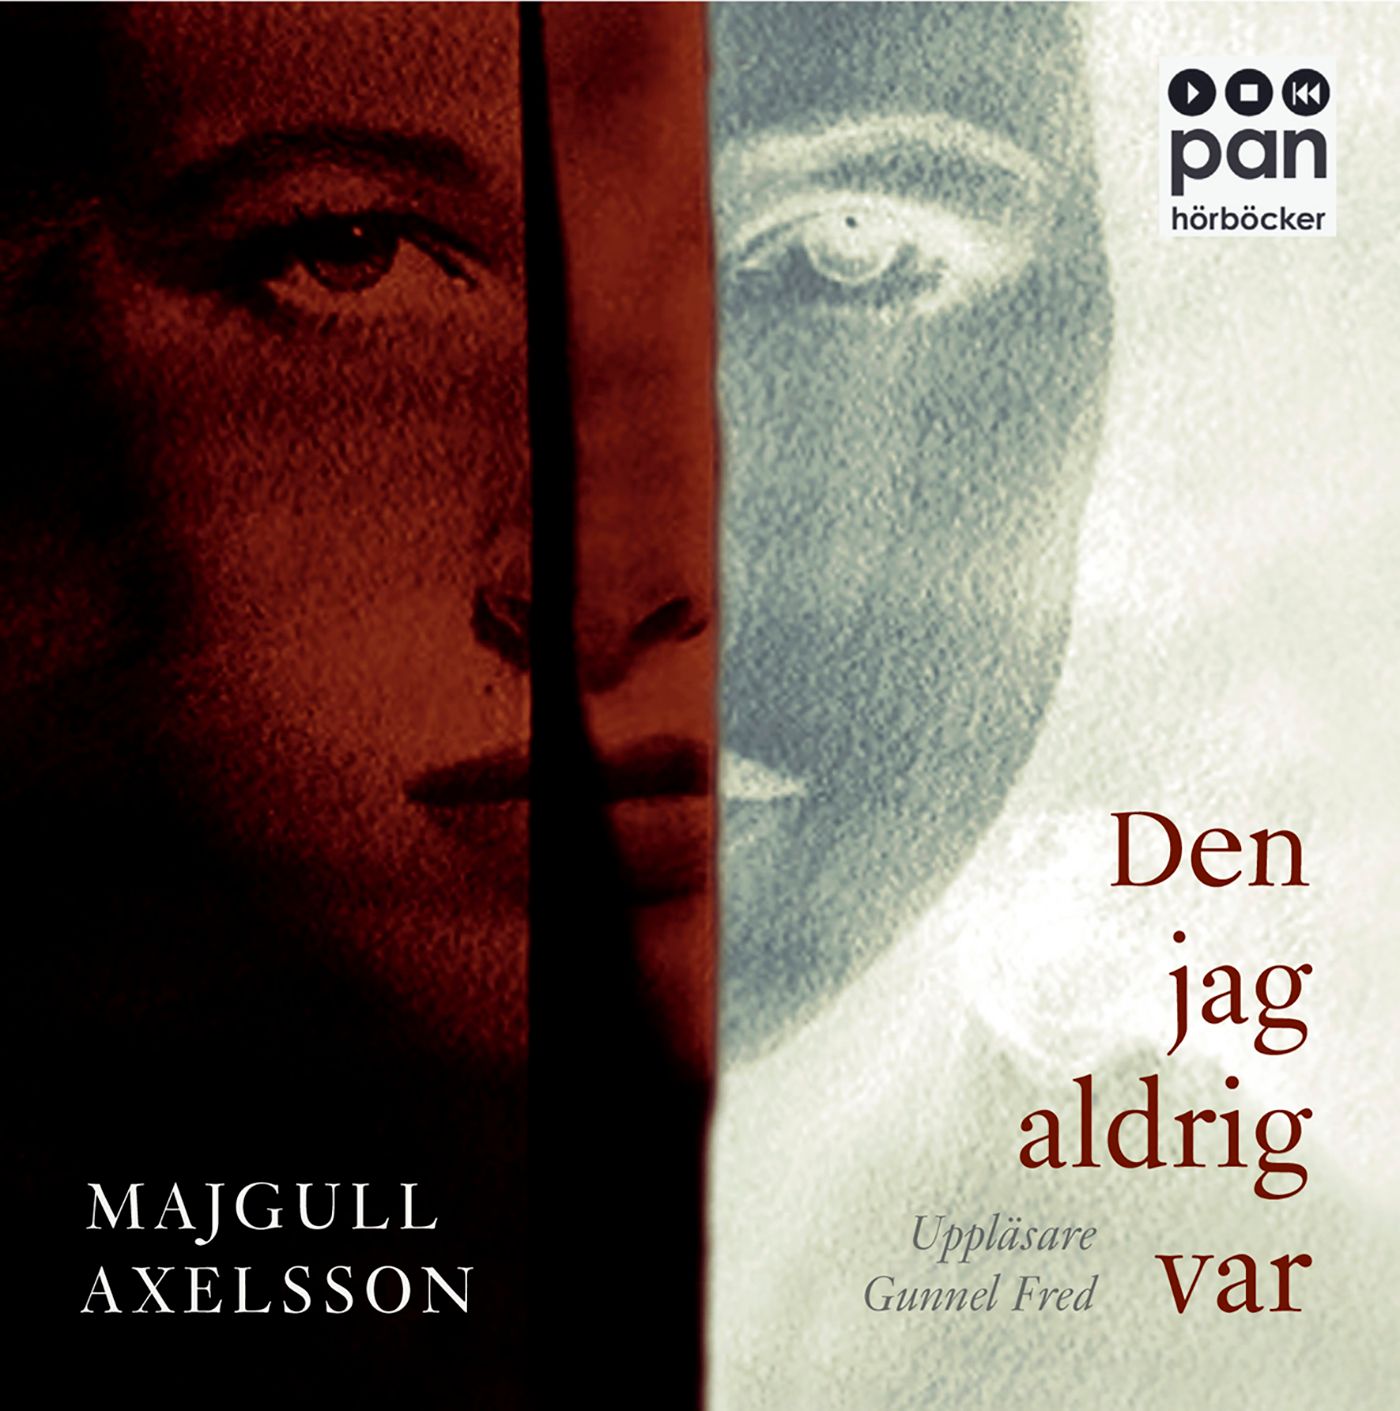 Den jag aldrig var, audiobook by Majgull Axelsson